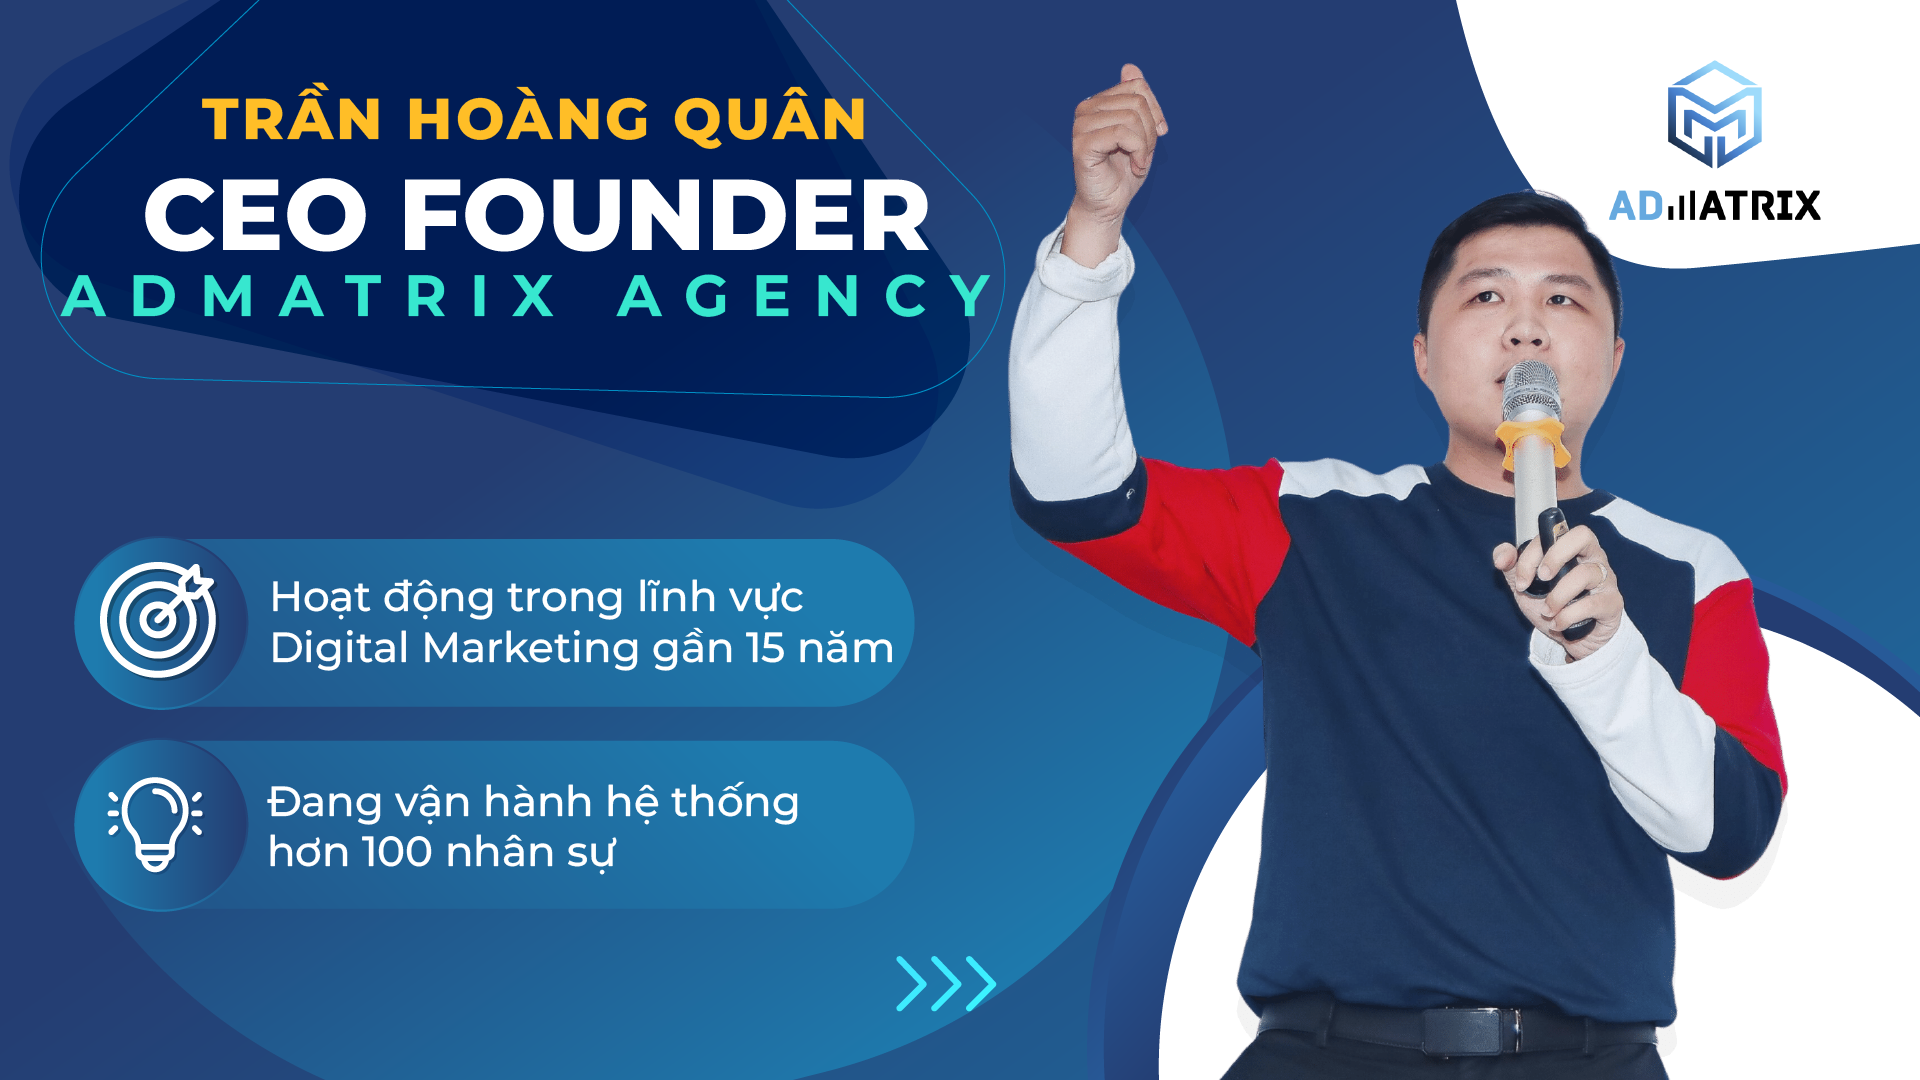 CEO Founder Tran Hoang Quan